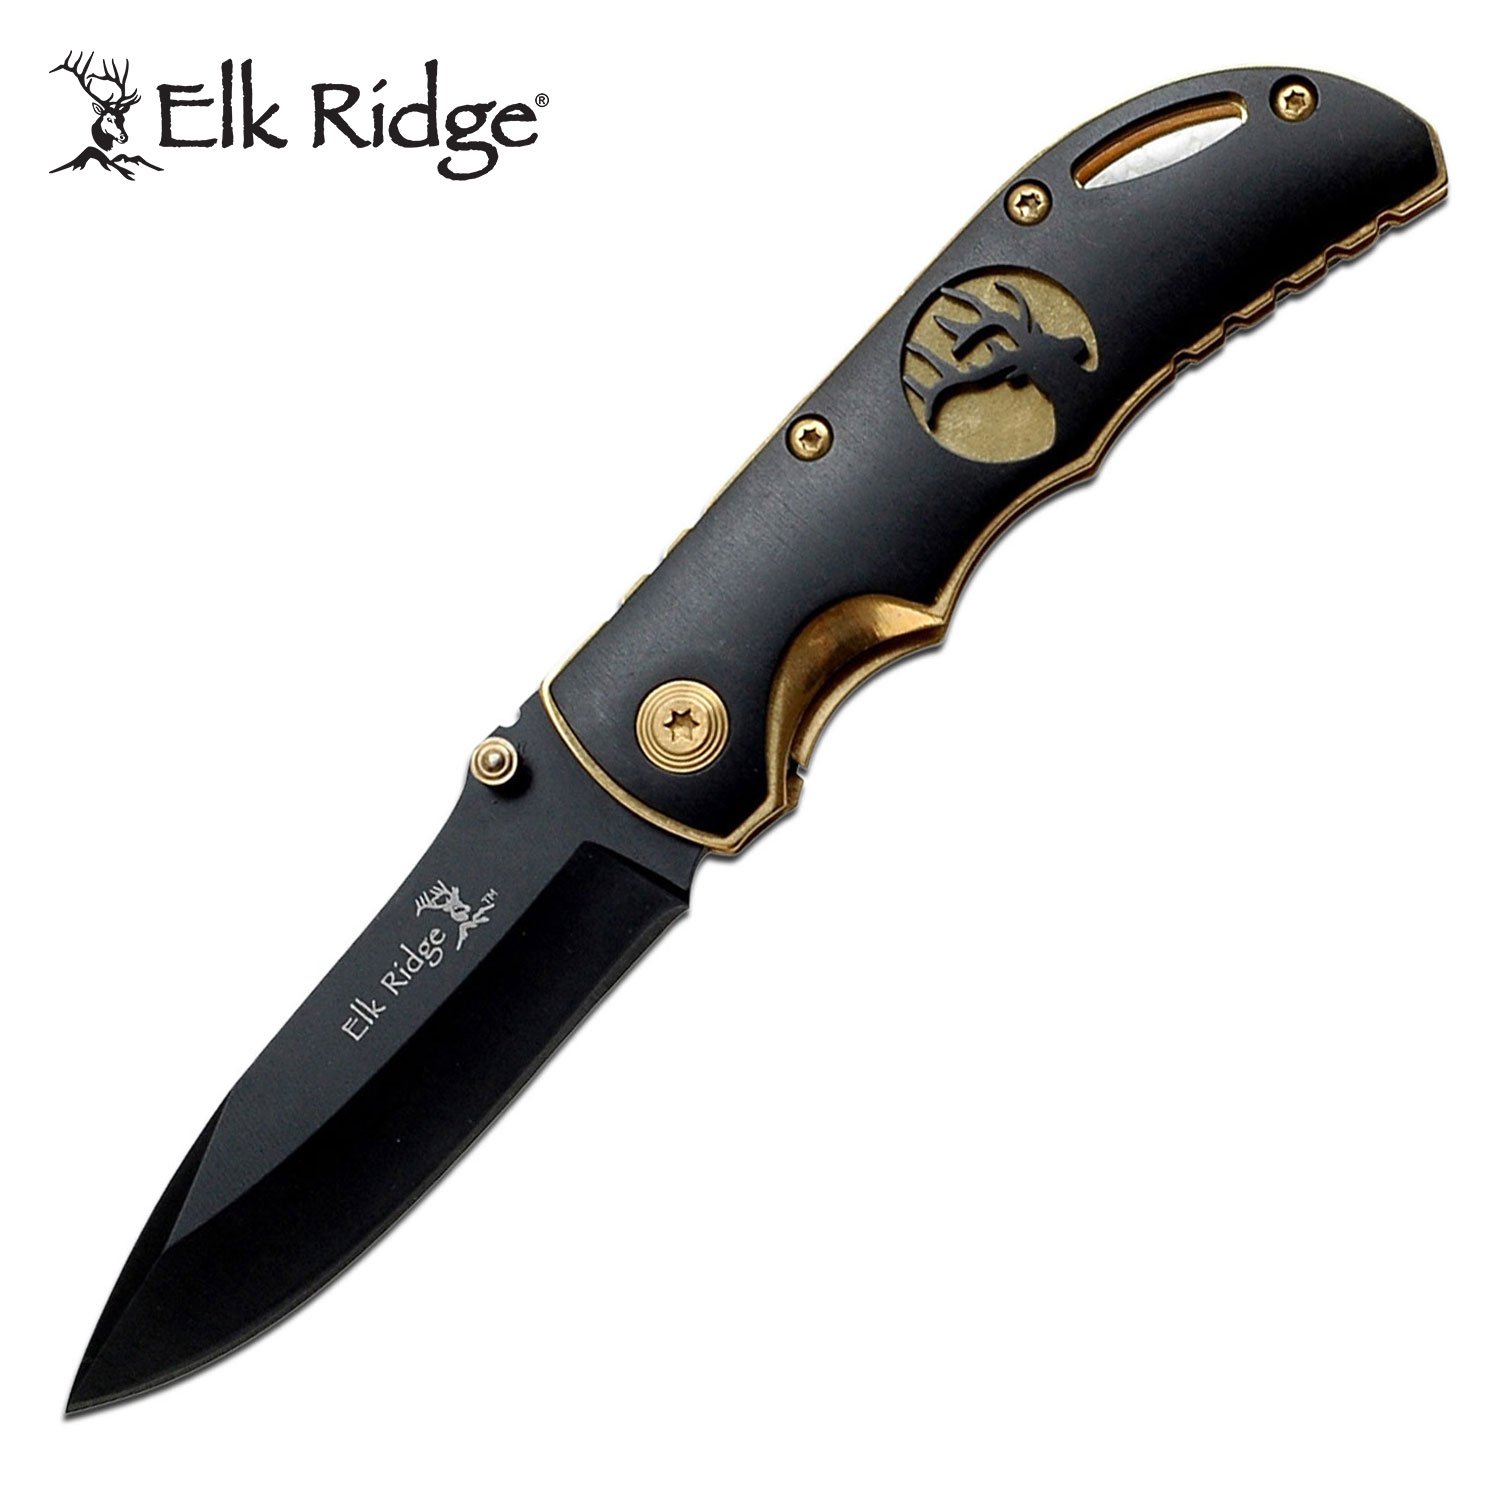 ELK RIDGE knife folding 6.25” overall lock blade ER134